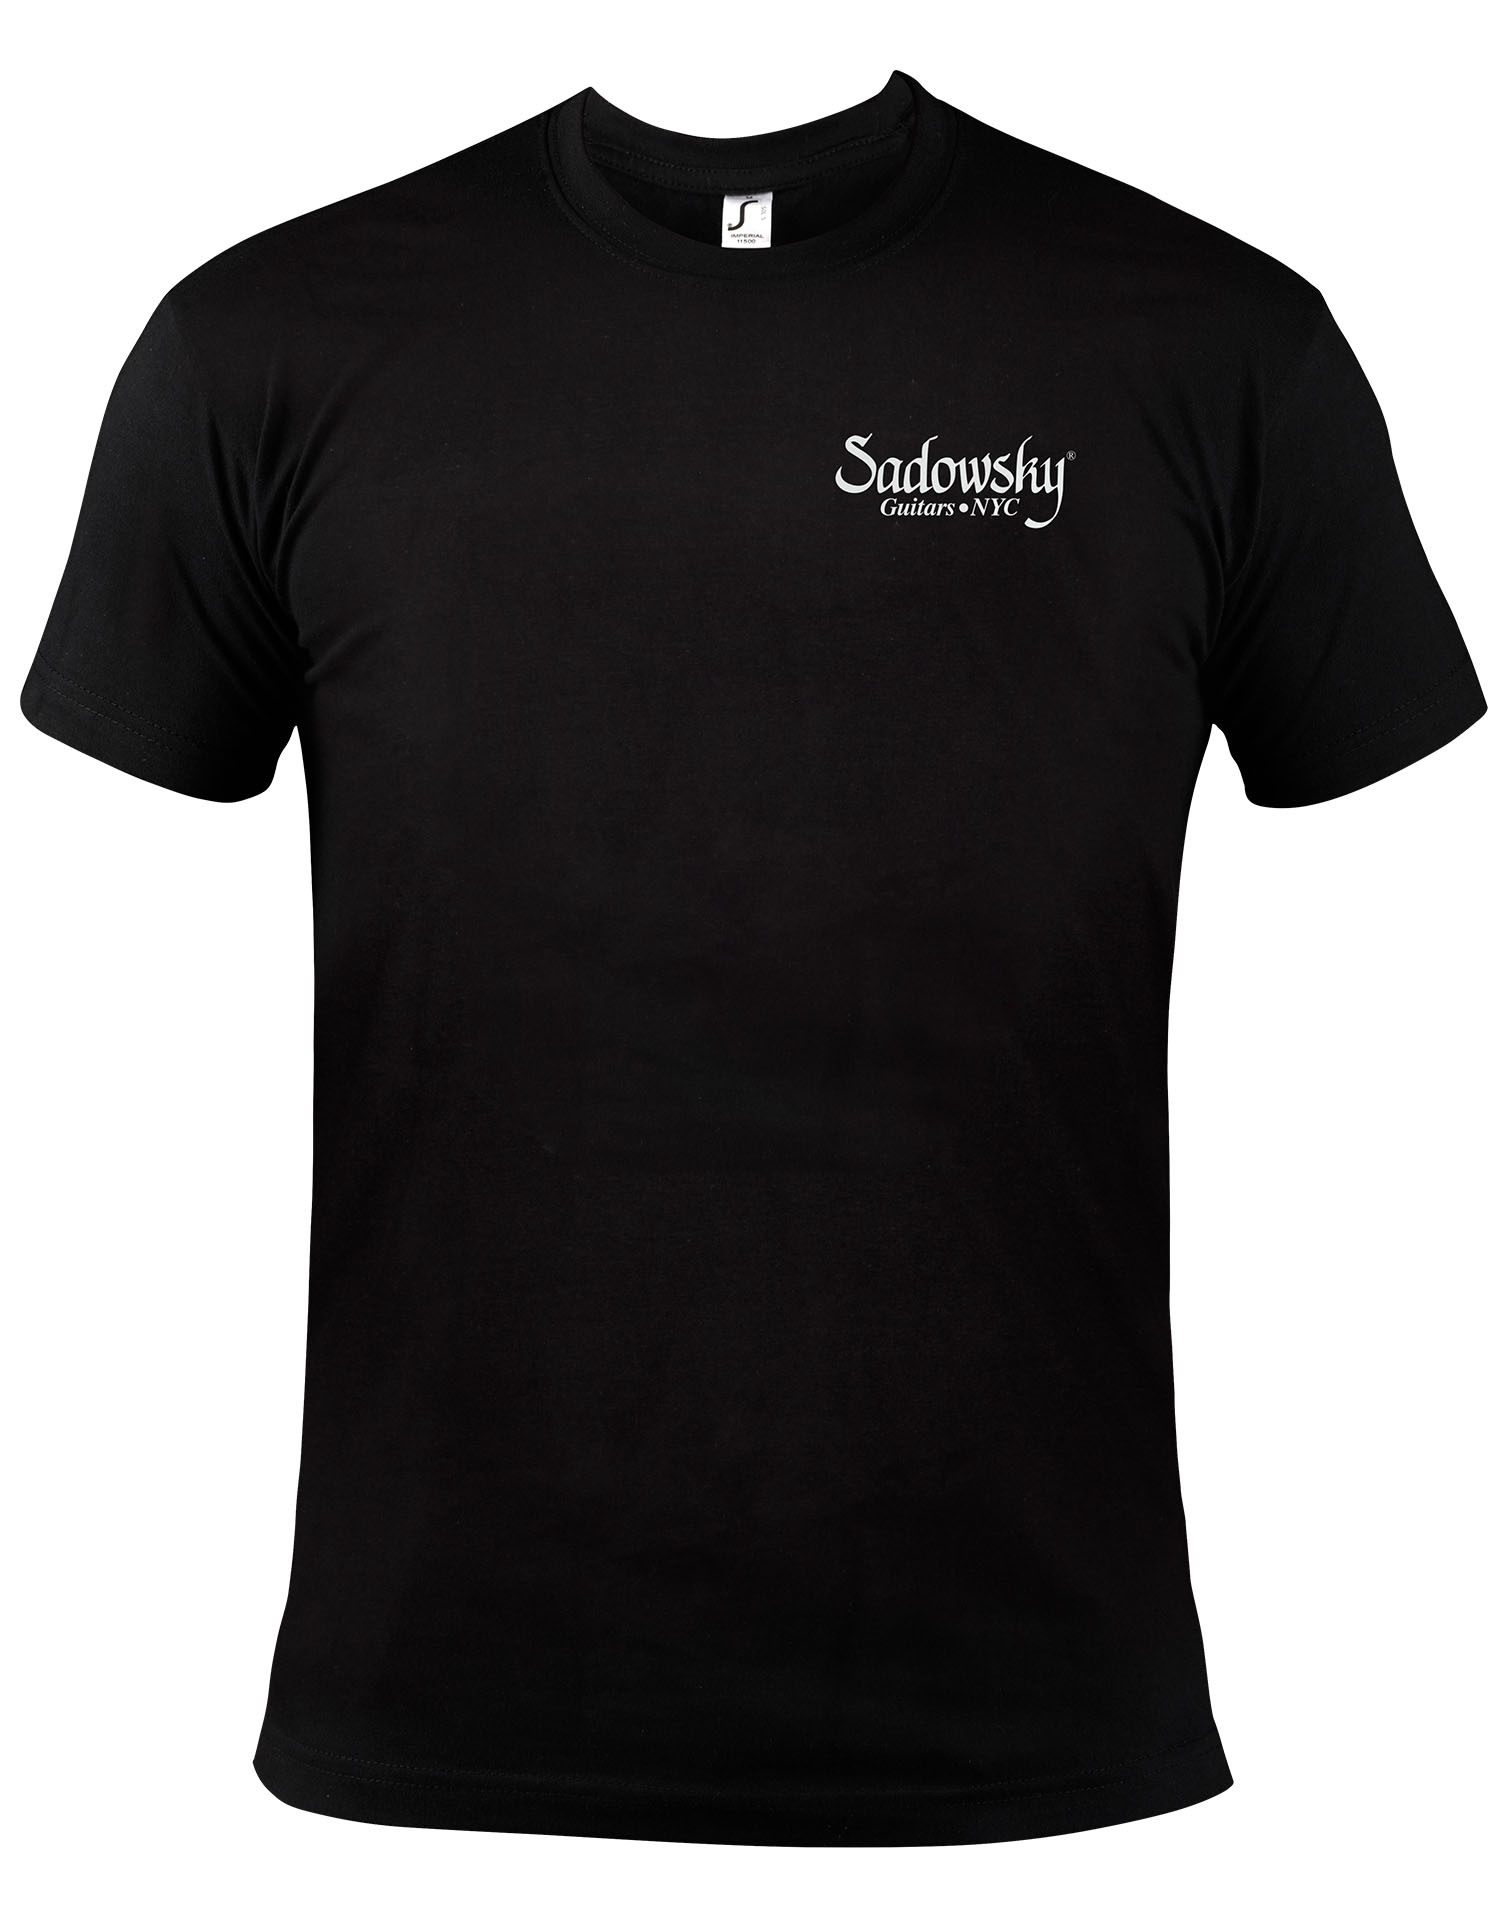 Sadowsky Promo - Logo T-Shirt, Black with White Print - Size XXL